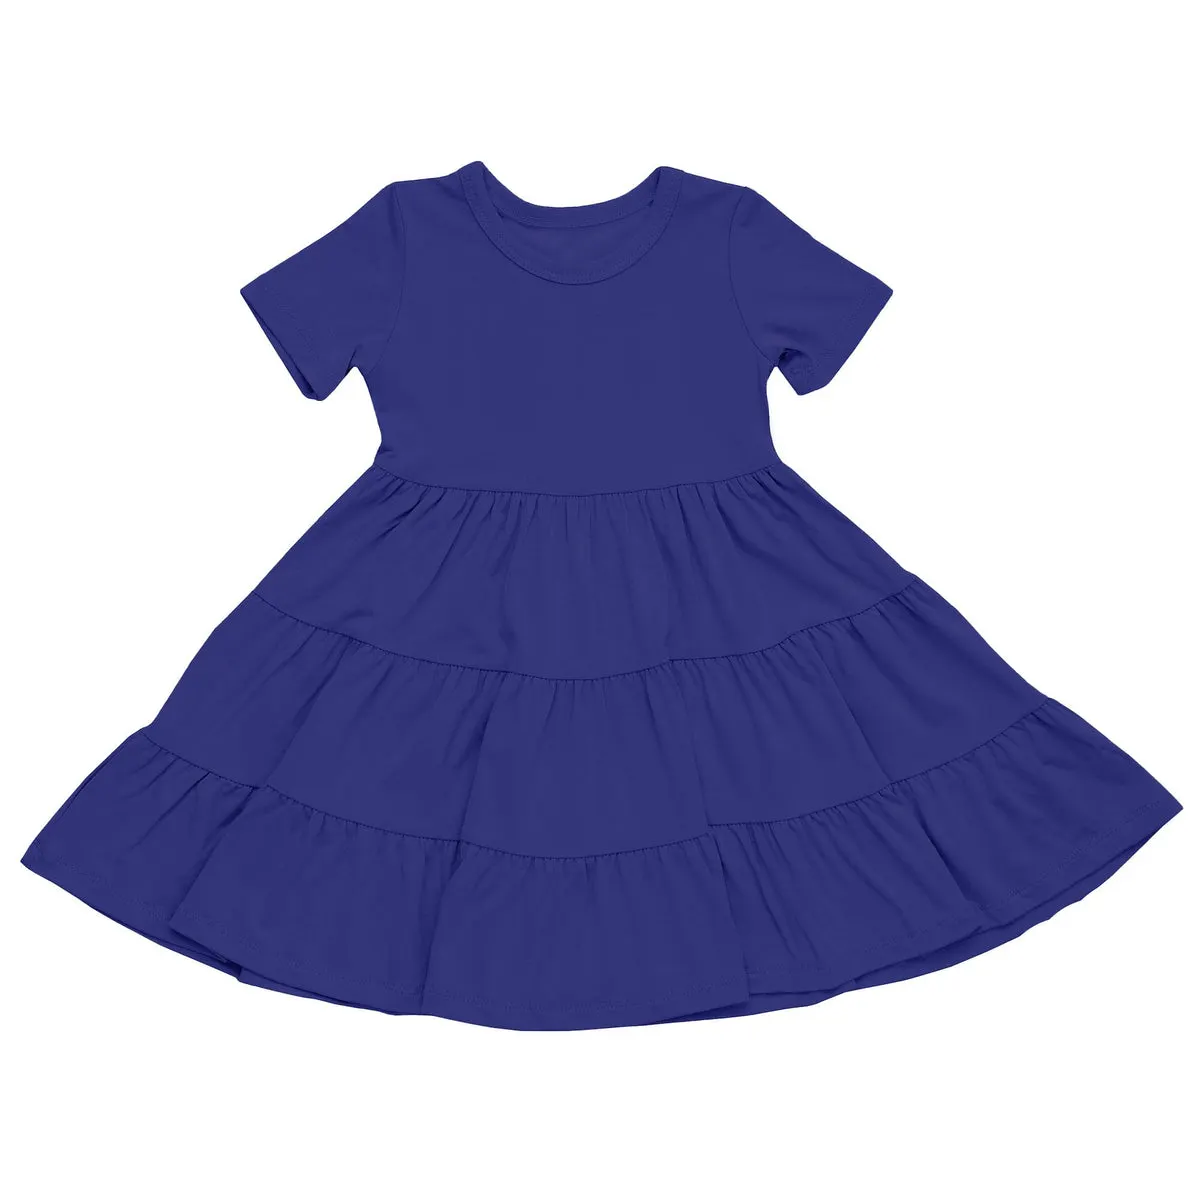 Personalizzato neonata estate manica corta vestito a strati neonato bambino a strati vestito gonfio fantasia vestiti per bambini 1-3 anni ragazze